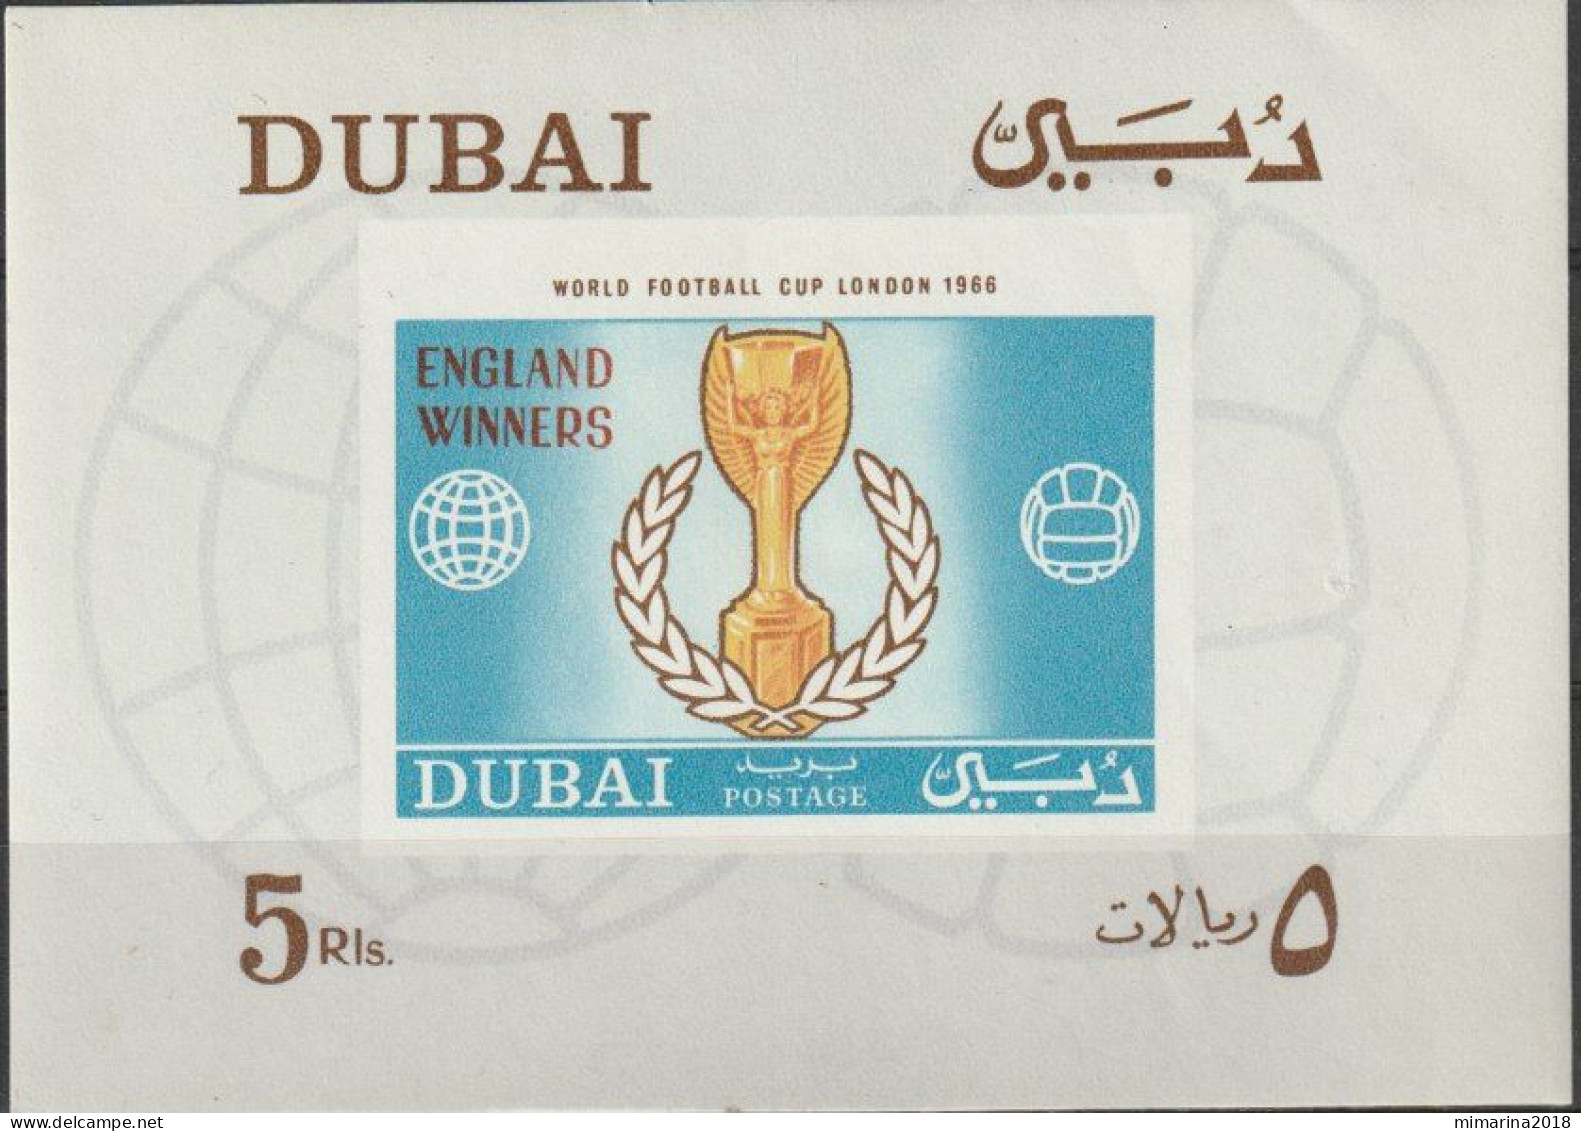 DUBAI 1966  "WORLD FOOTBALL CUP"  IMPERF. - 1966 – England